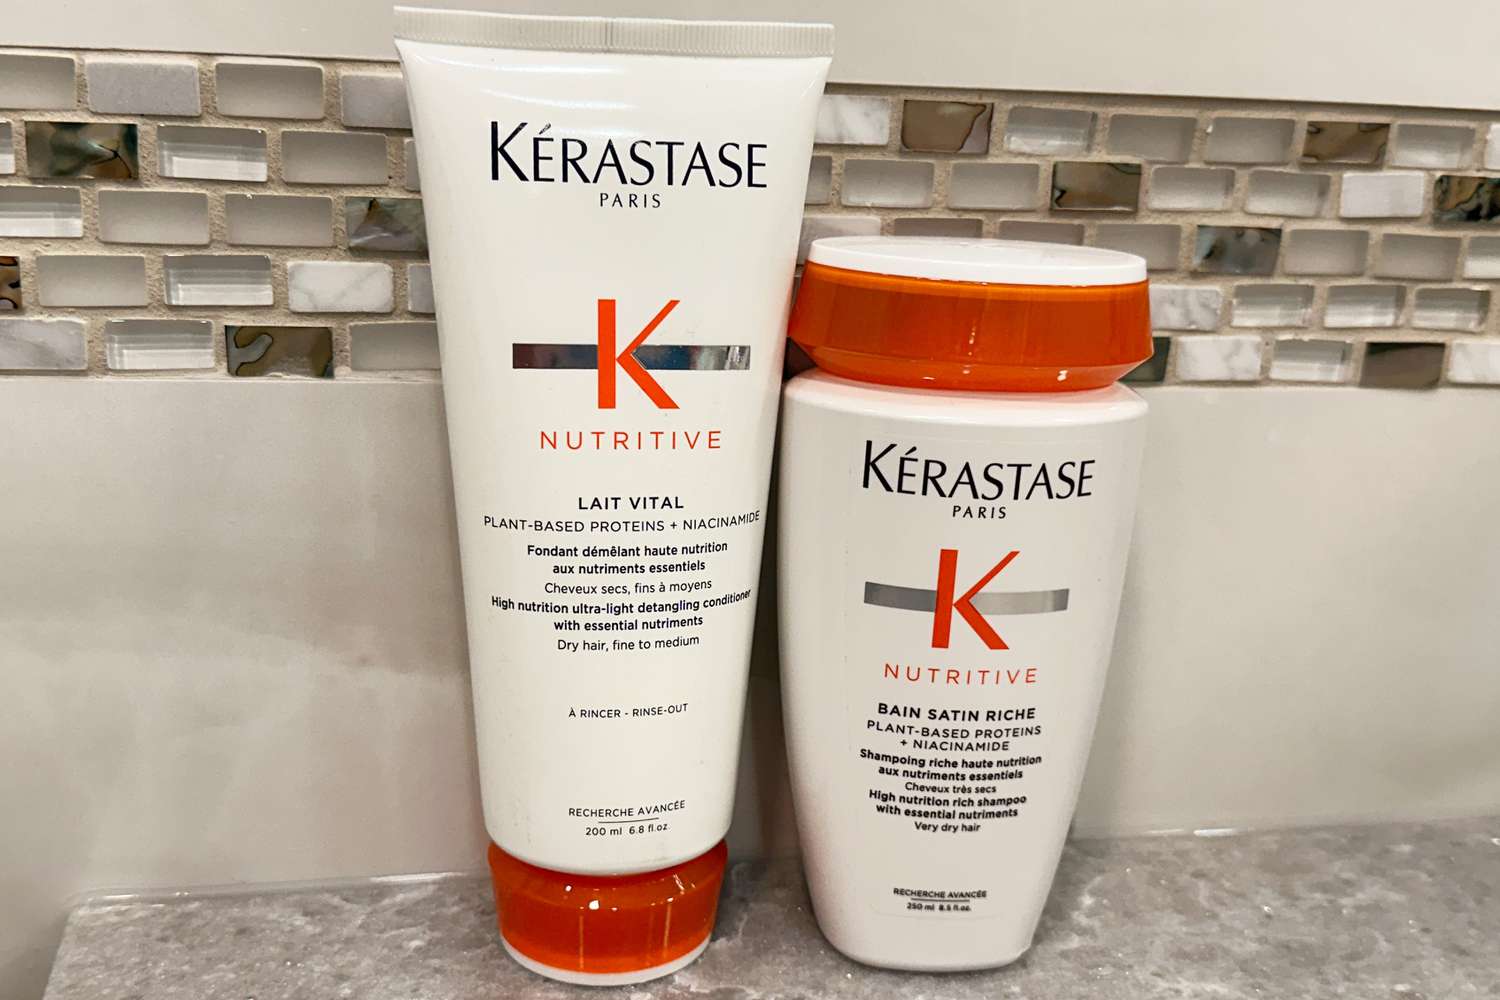 Bottles of KÃ©rastase Nutritive Lait Vital Shampoo and Conditioner